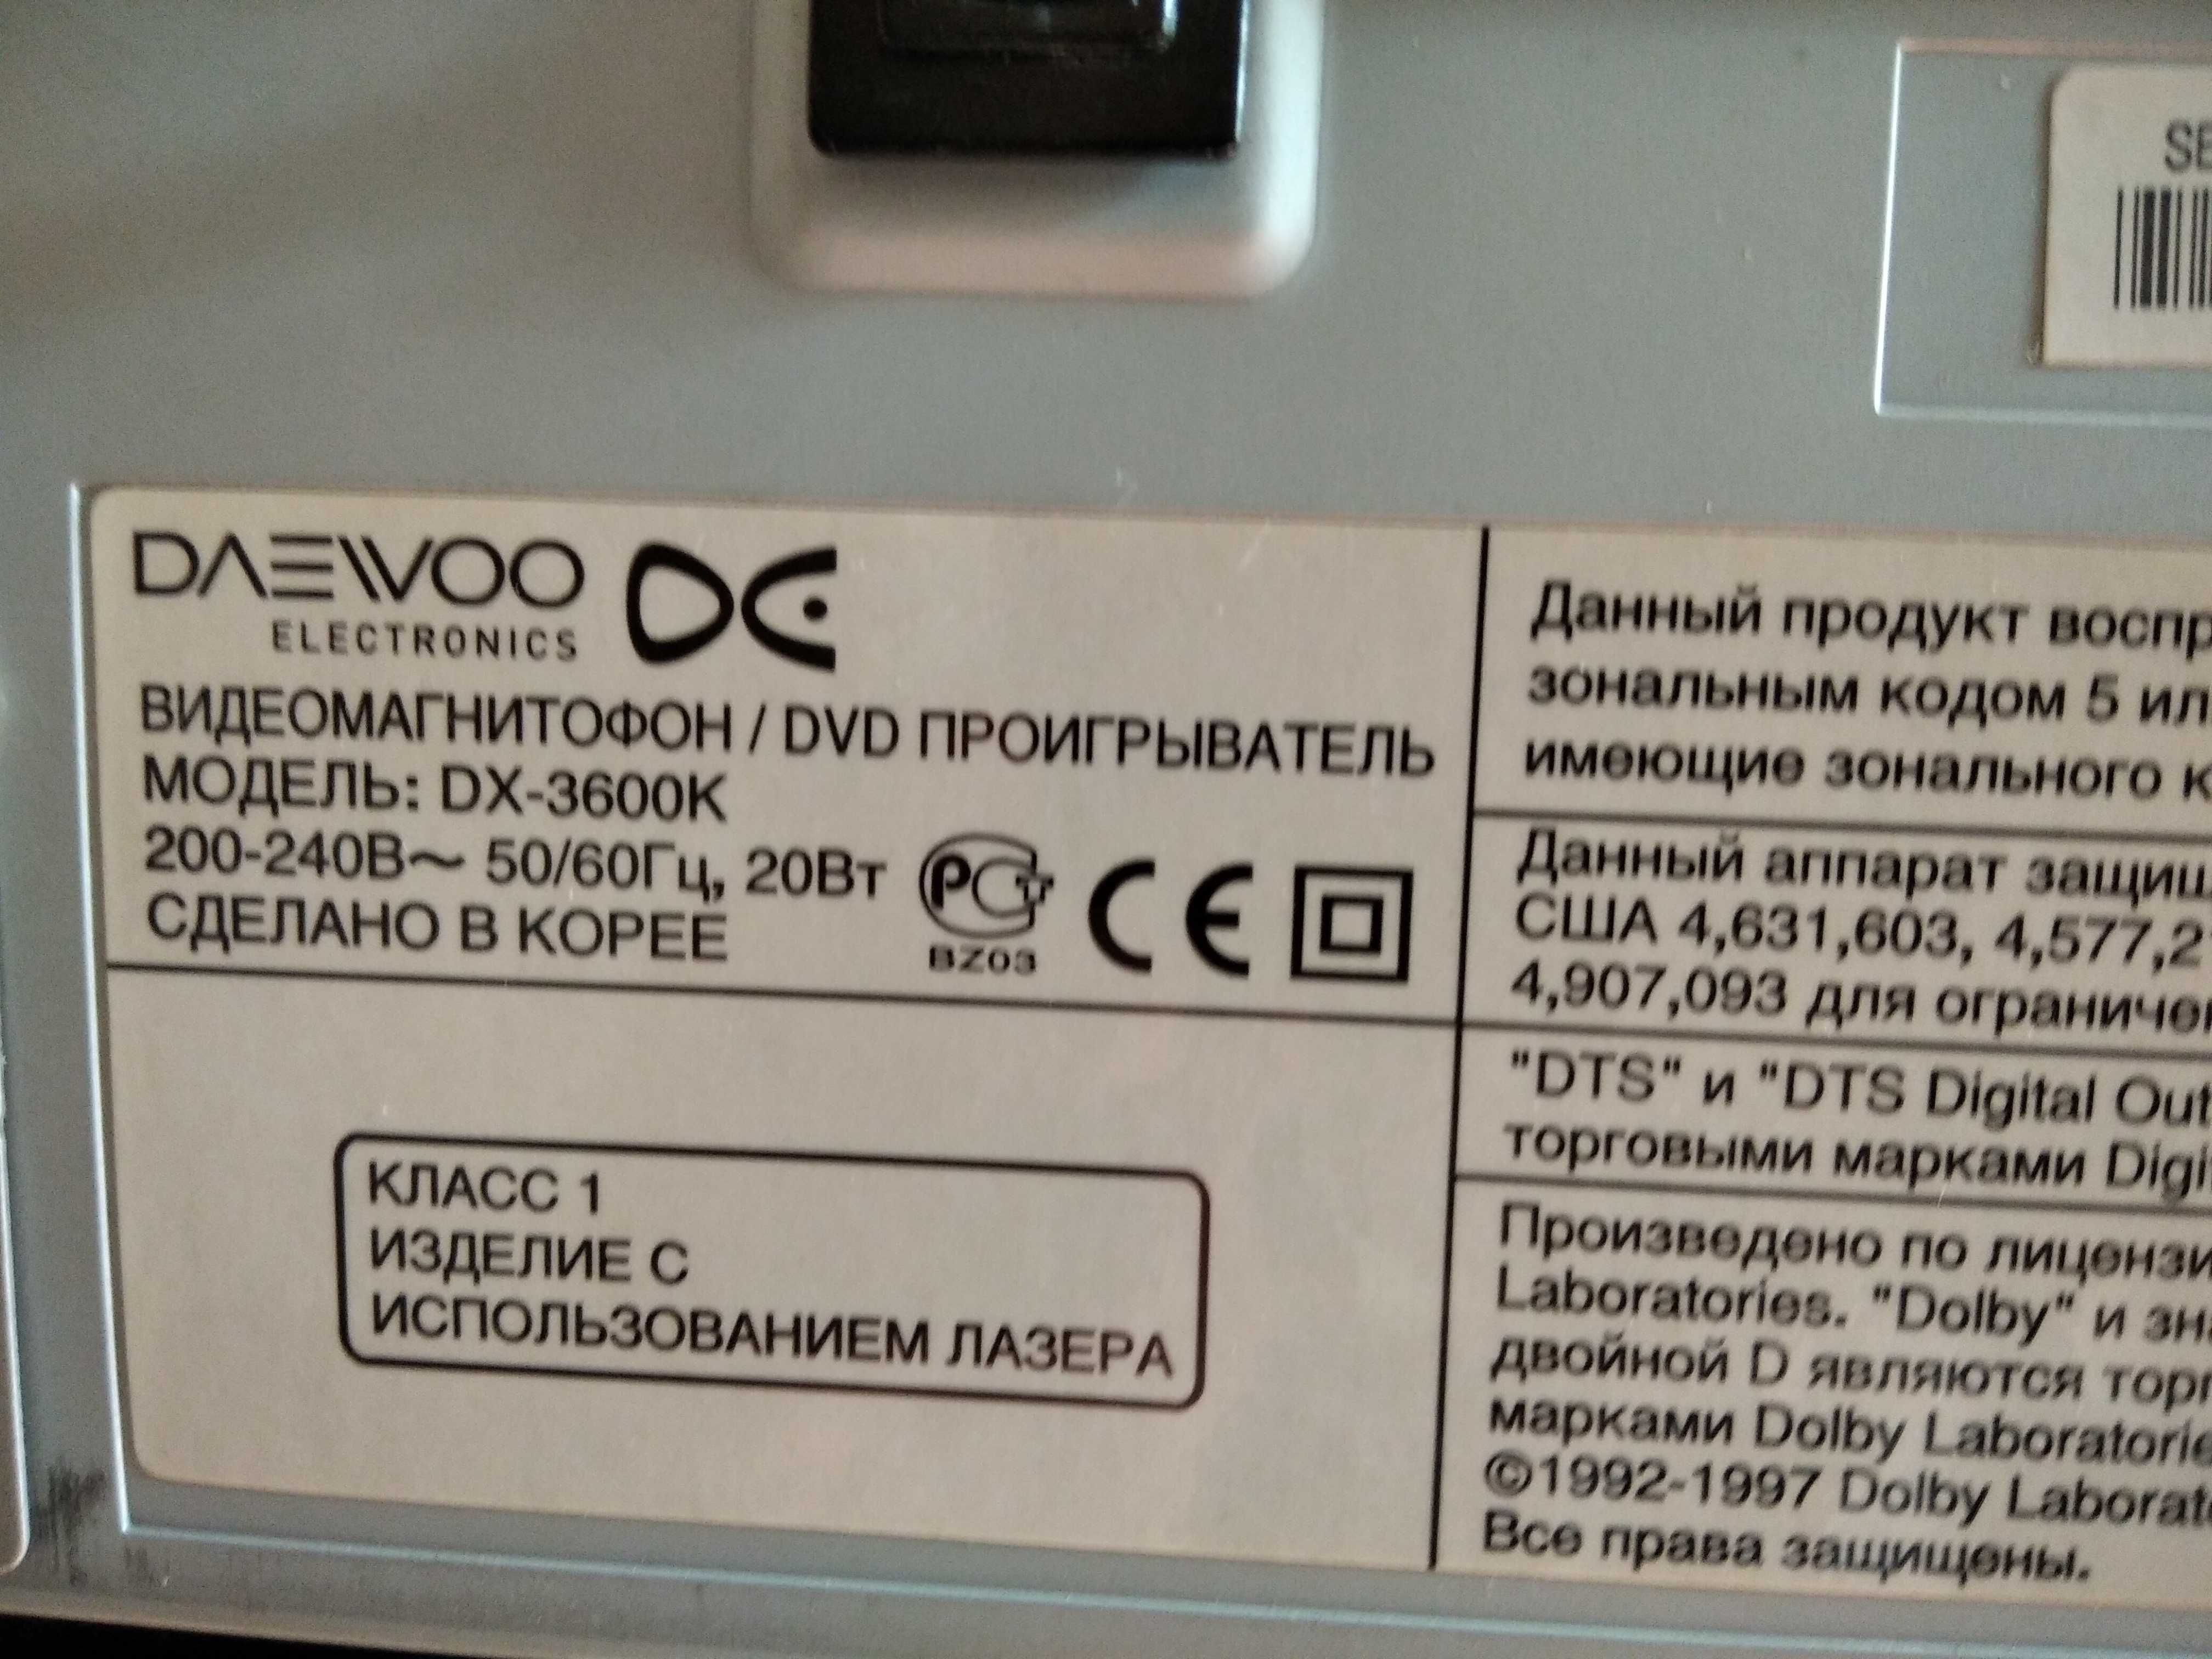 Dvd + VHS Daewoo Combo recorder